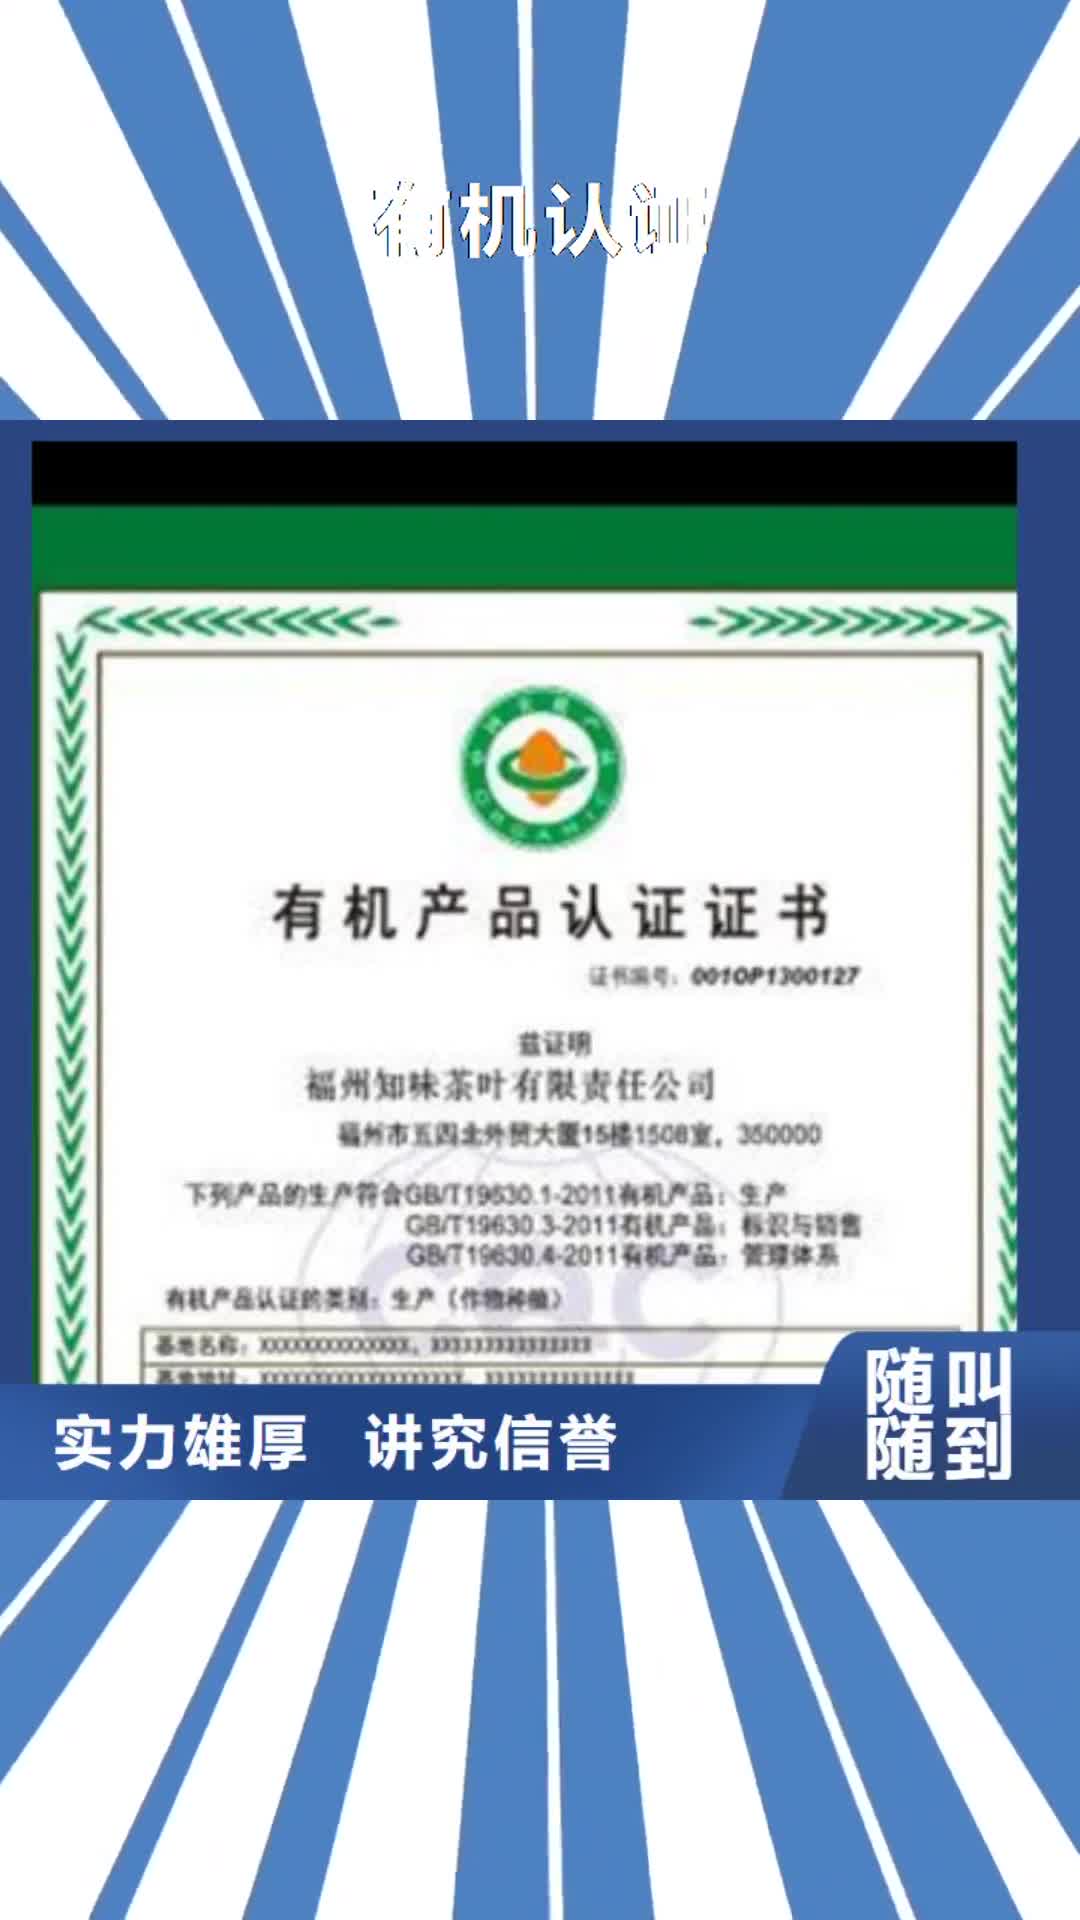 沈阳【有机认证】,知识产权认证/GB29490精英团队